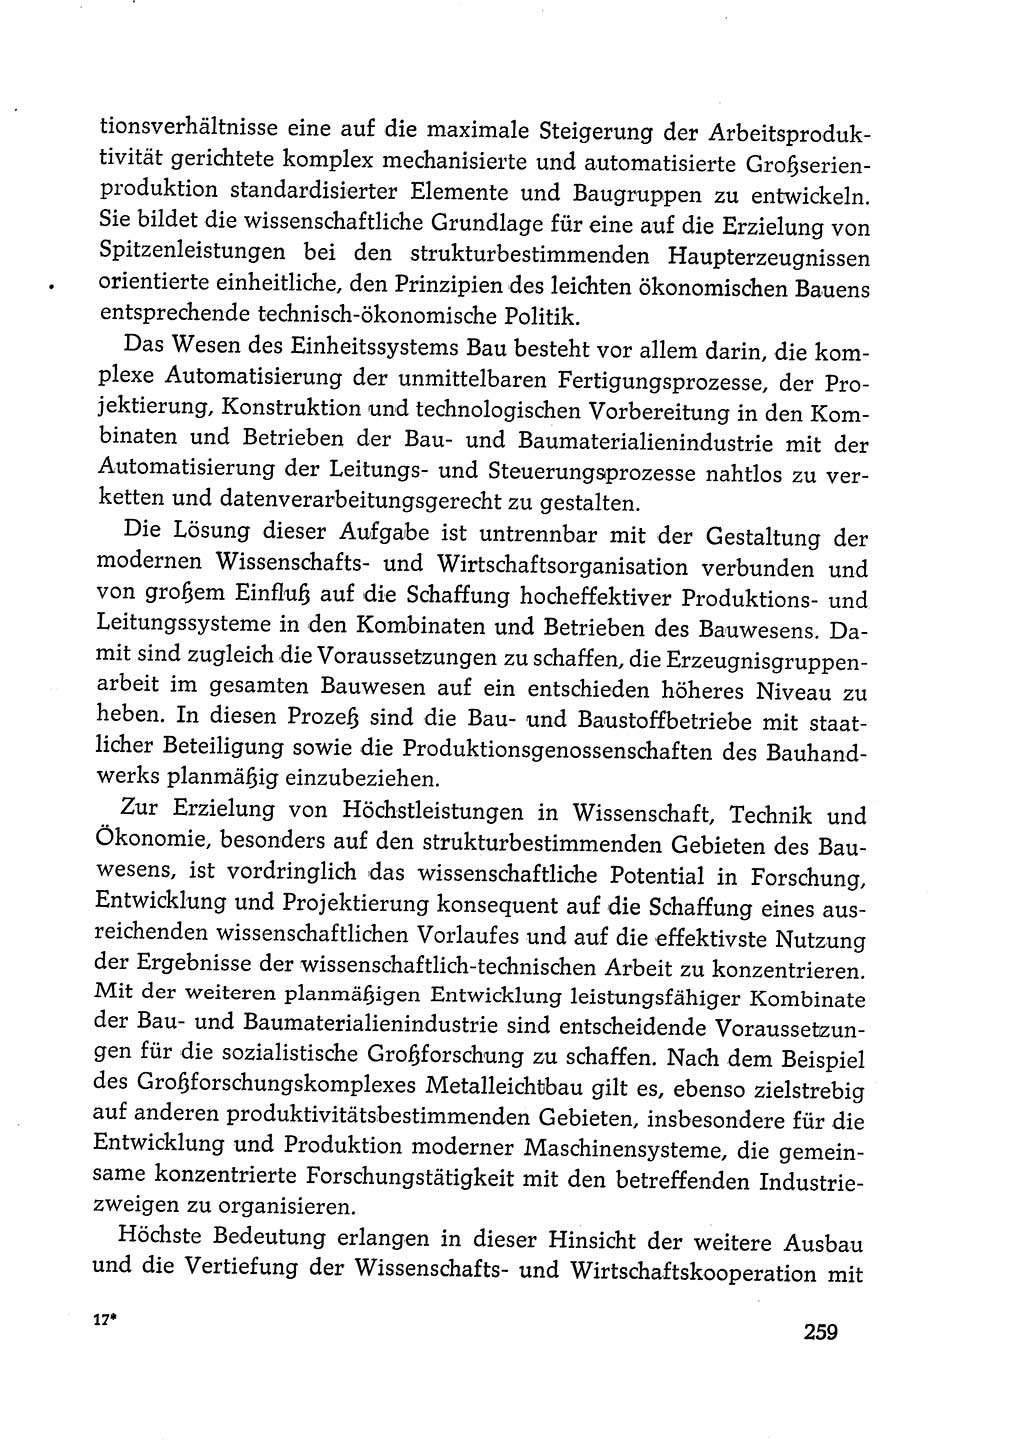 Dokumente der Sozialistischen Einheitspartei Deutschlands (SED) [Deutsche Demokratische Republik (DDR)] 1968-1969, Seite 259 (Dok. SED DDR 1968-1969, S. 259)